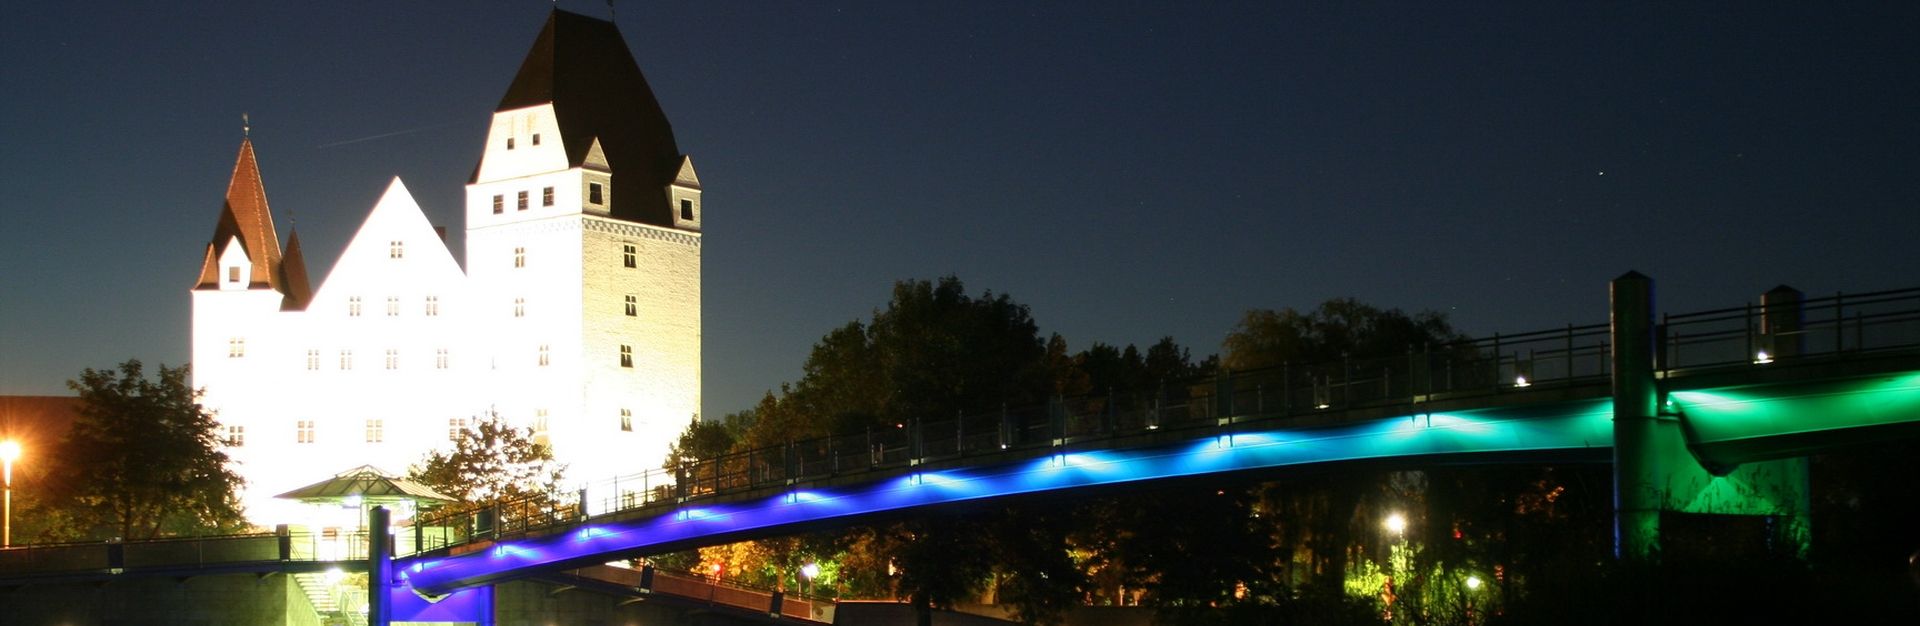 Schloss Ingolstadt bei Nacht